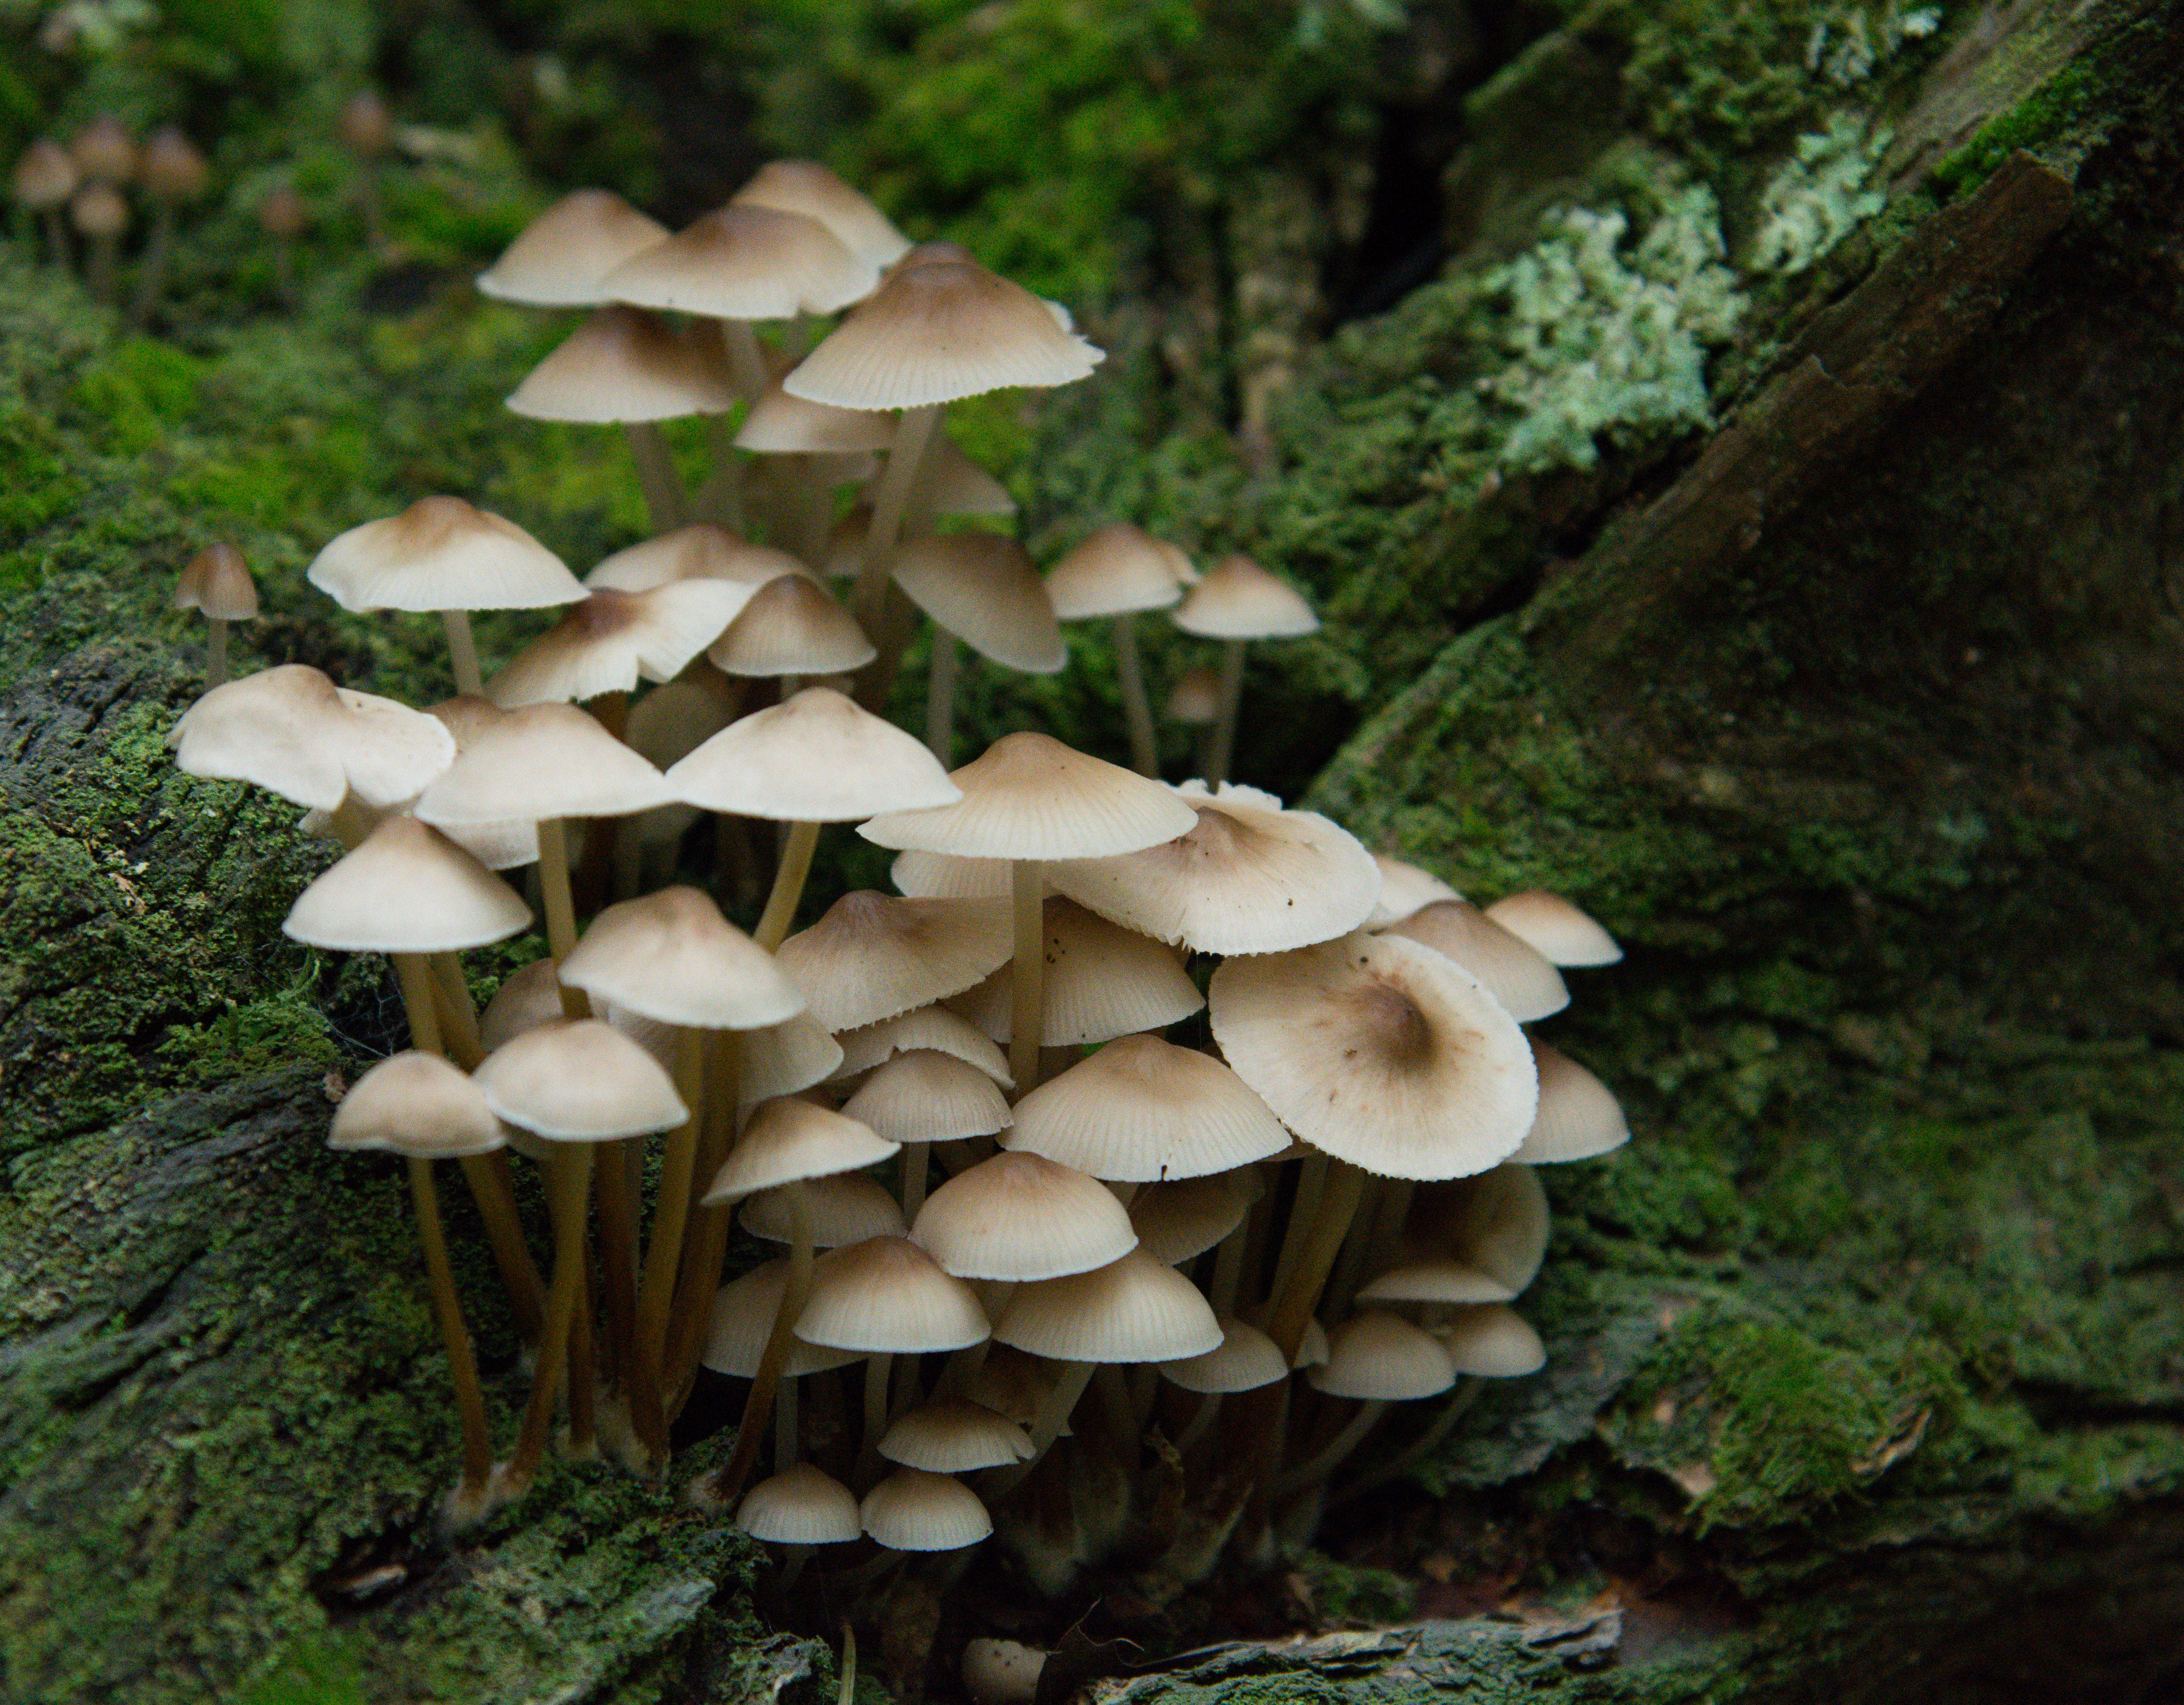 clump of mushrooms